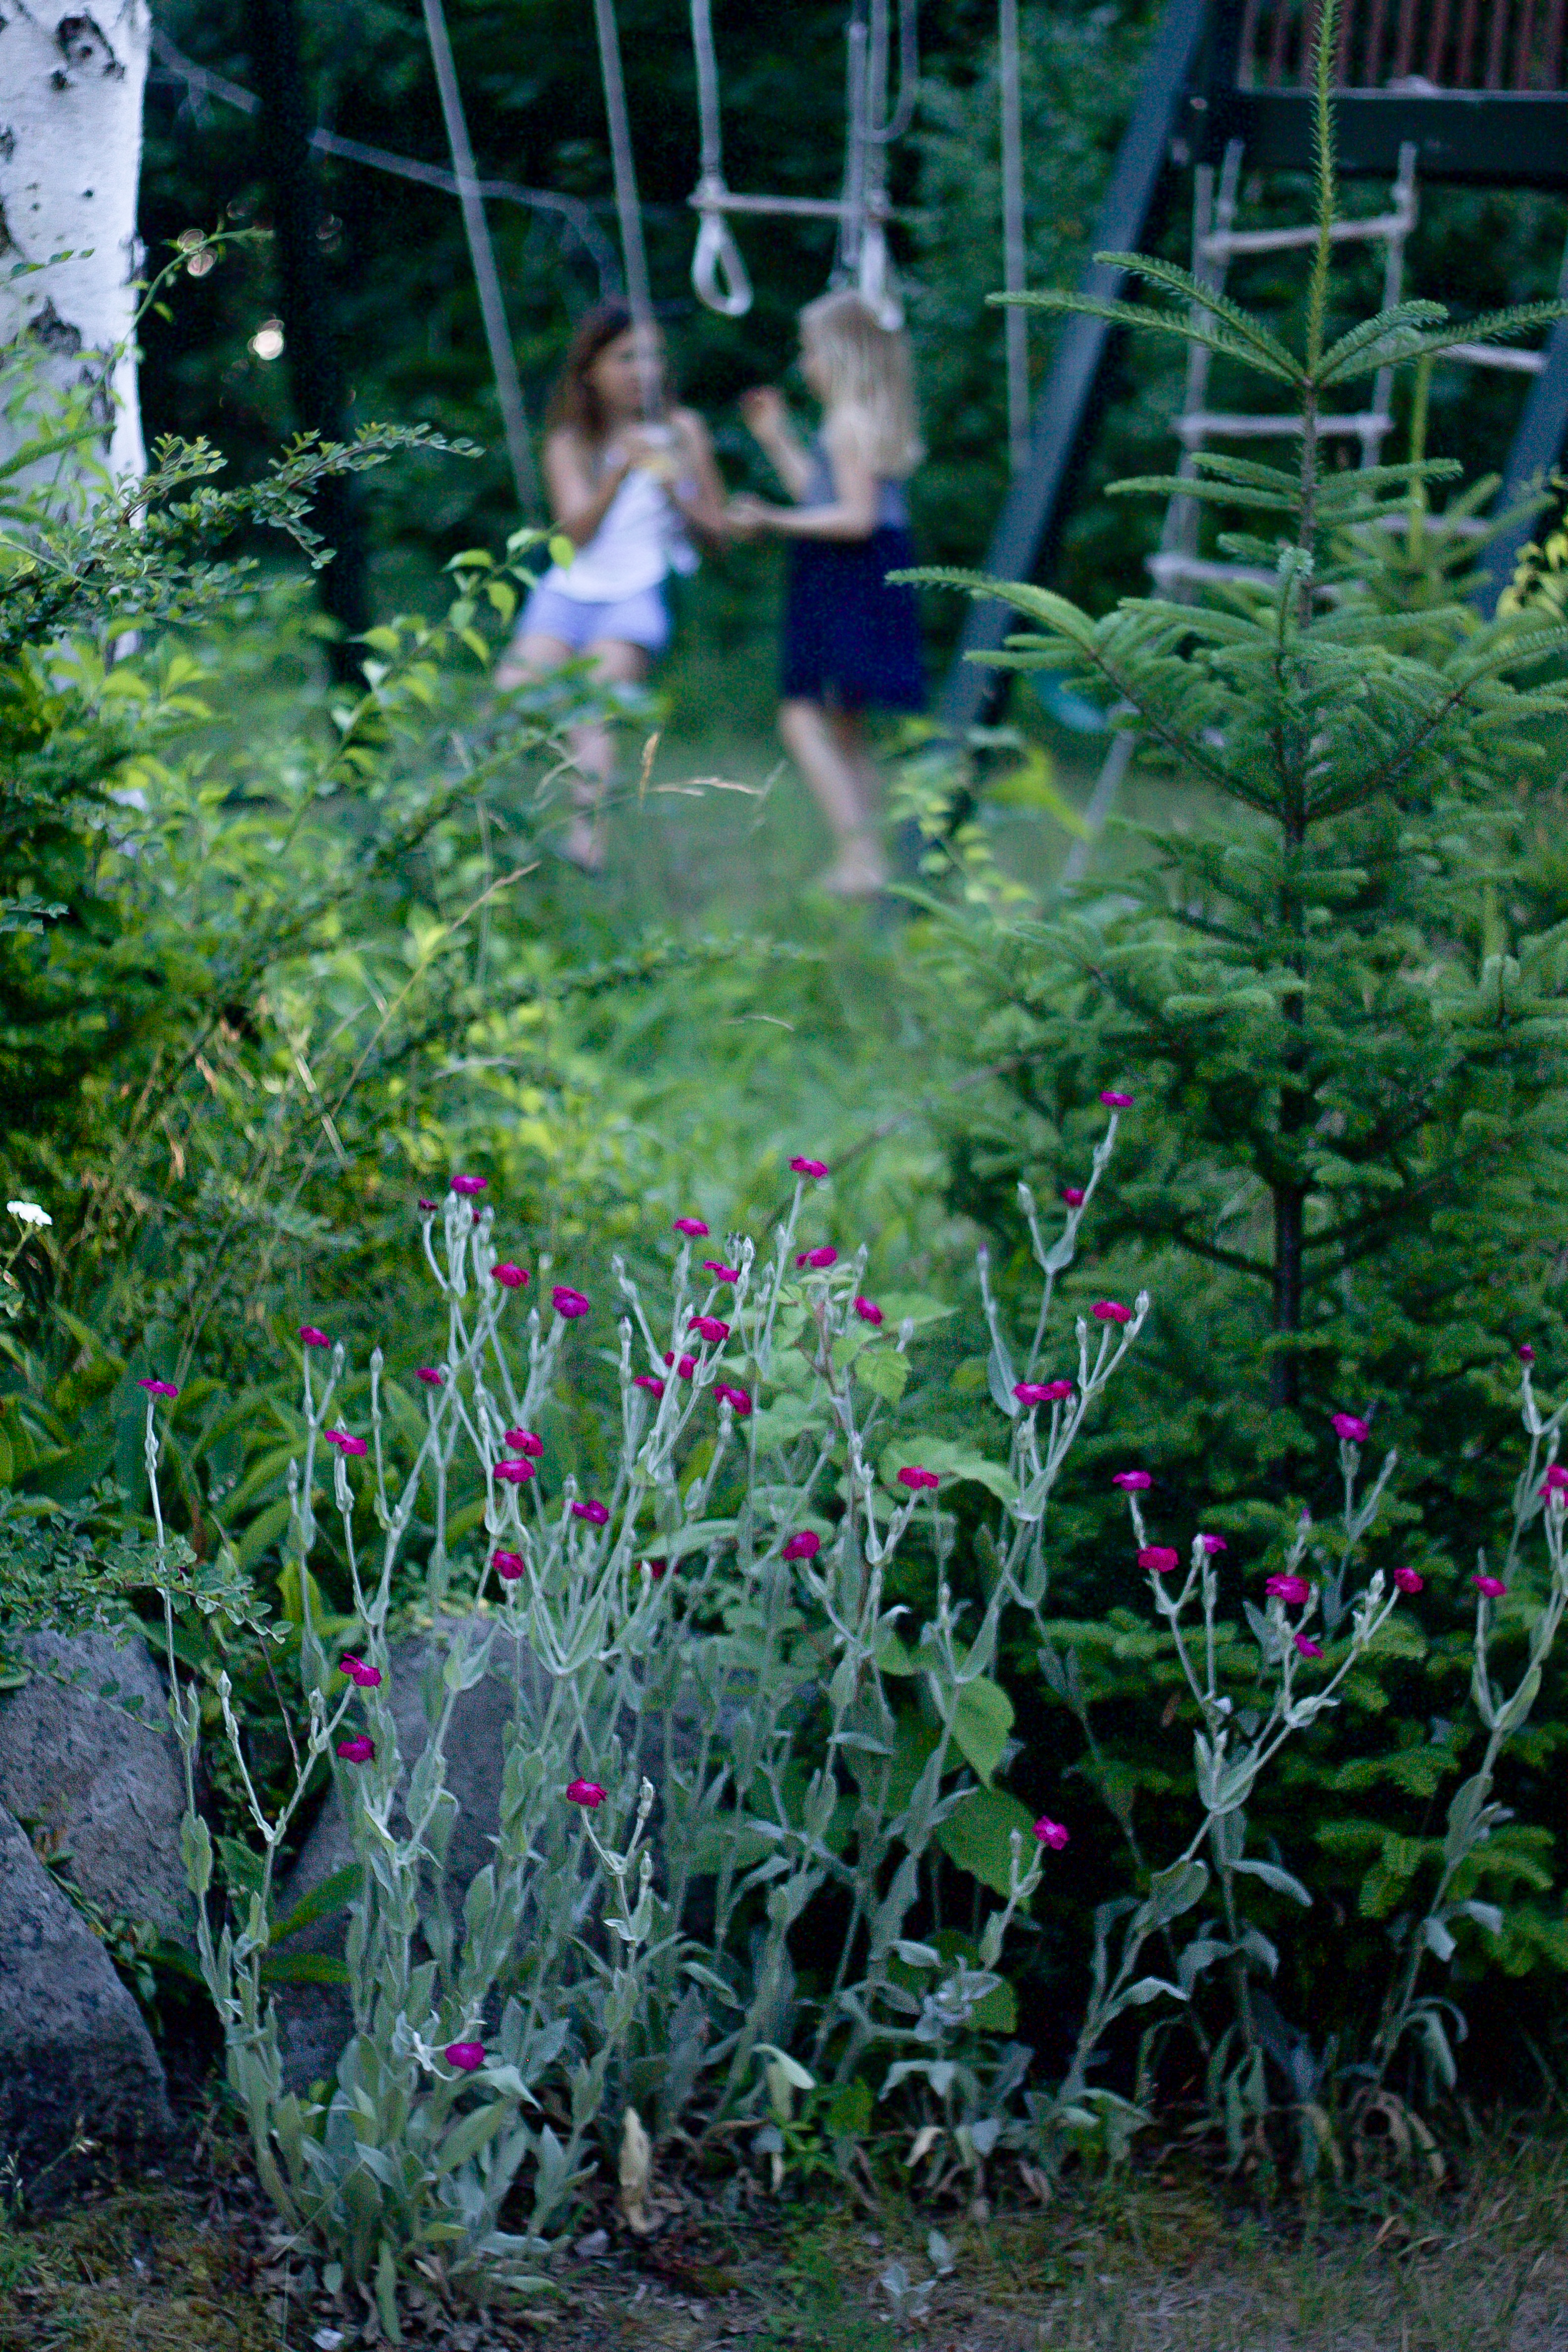 Marnie's garden with girls, Gardenista